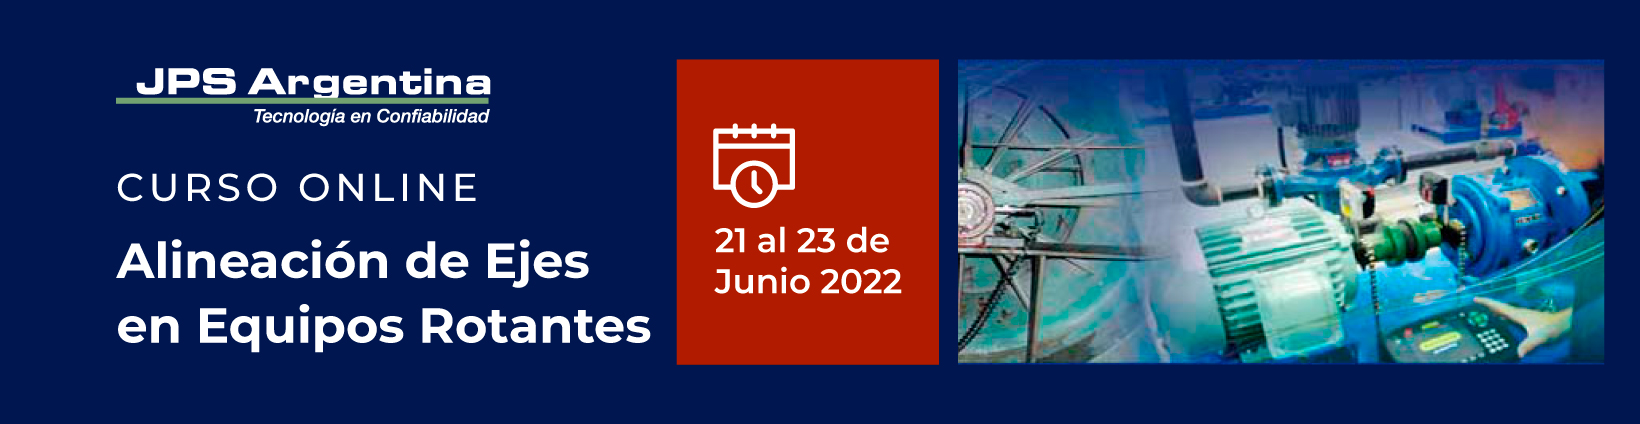 CURSO ONLINE 21 AL 23 DE JUNIO 2022 – ALINEACION DE EJES EN EQUIPOS ROTANTES